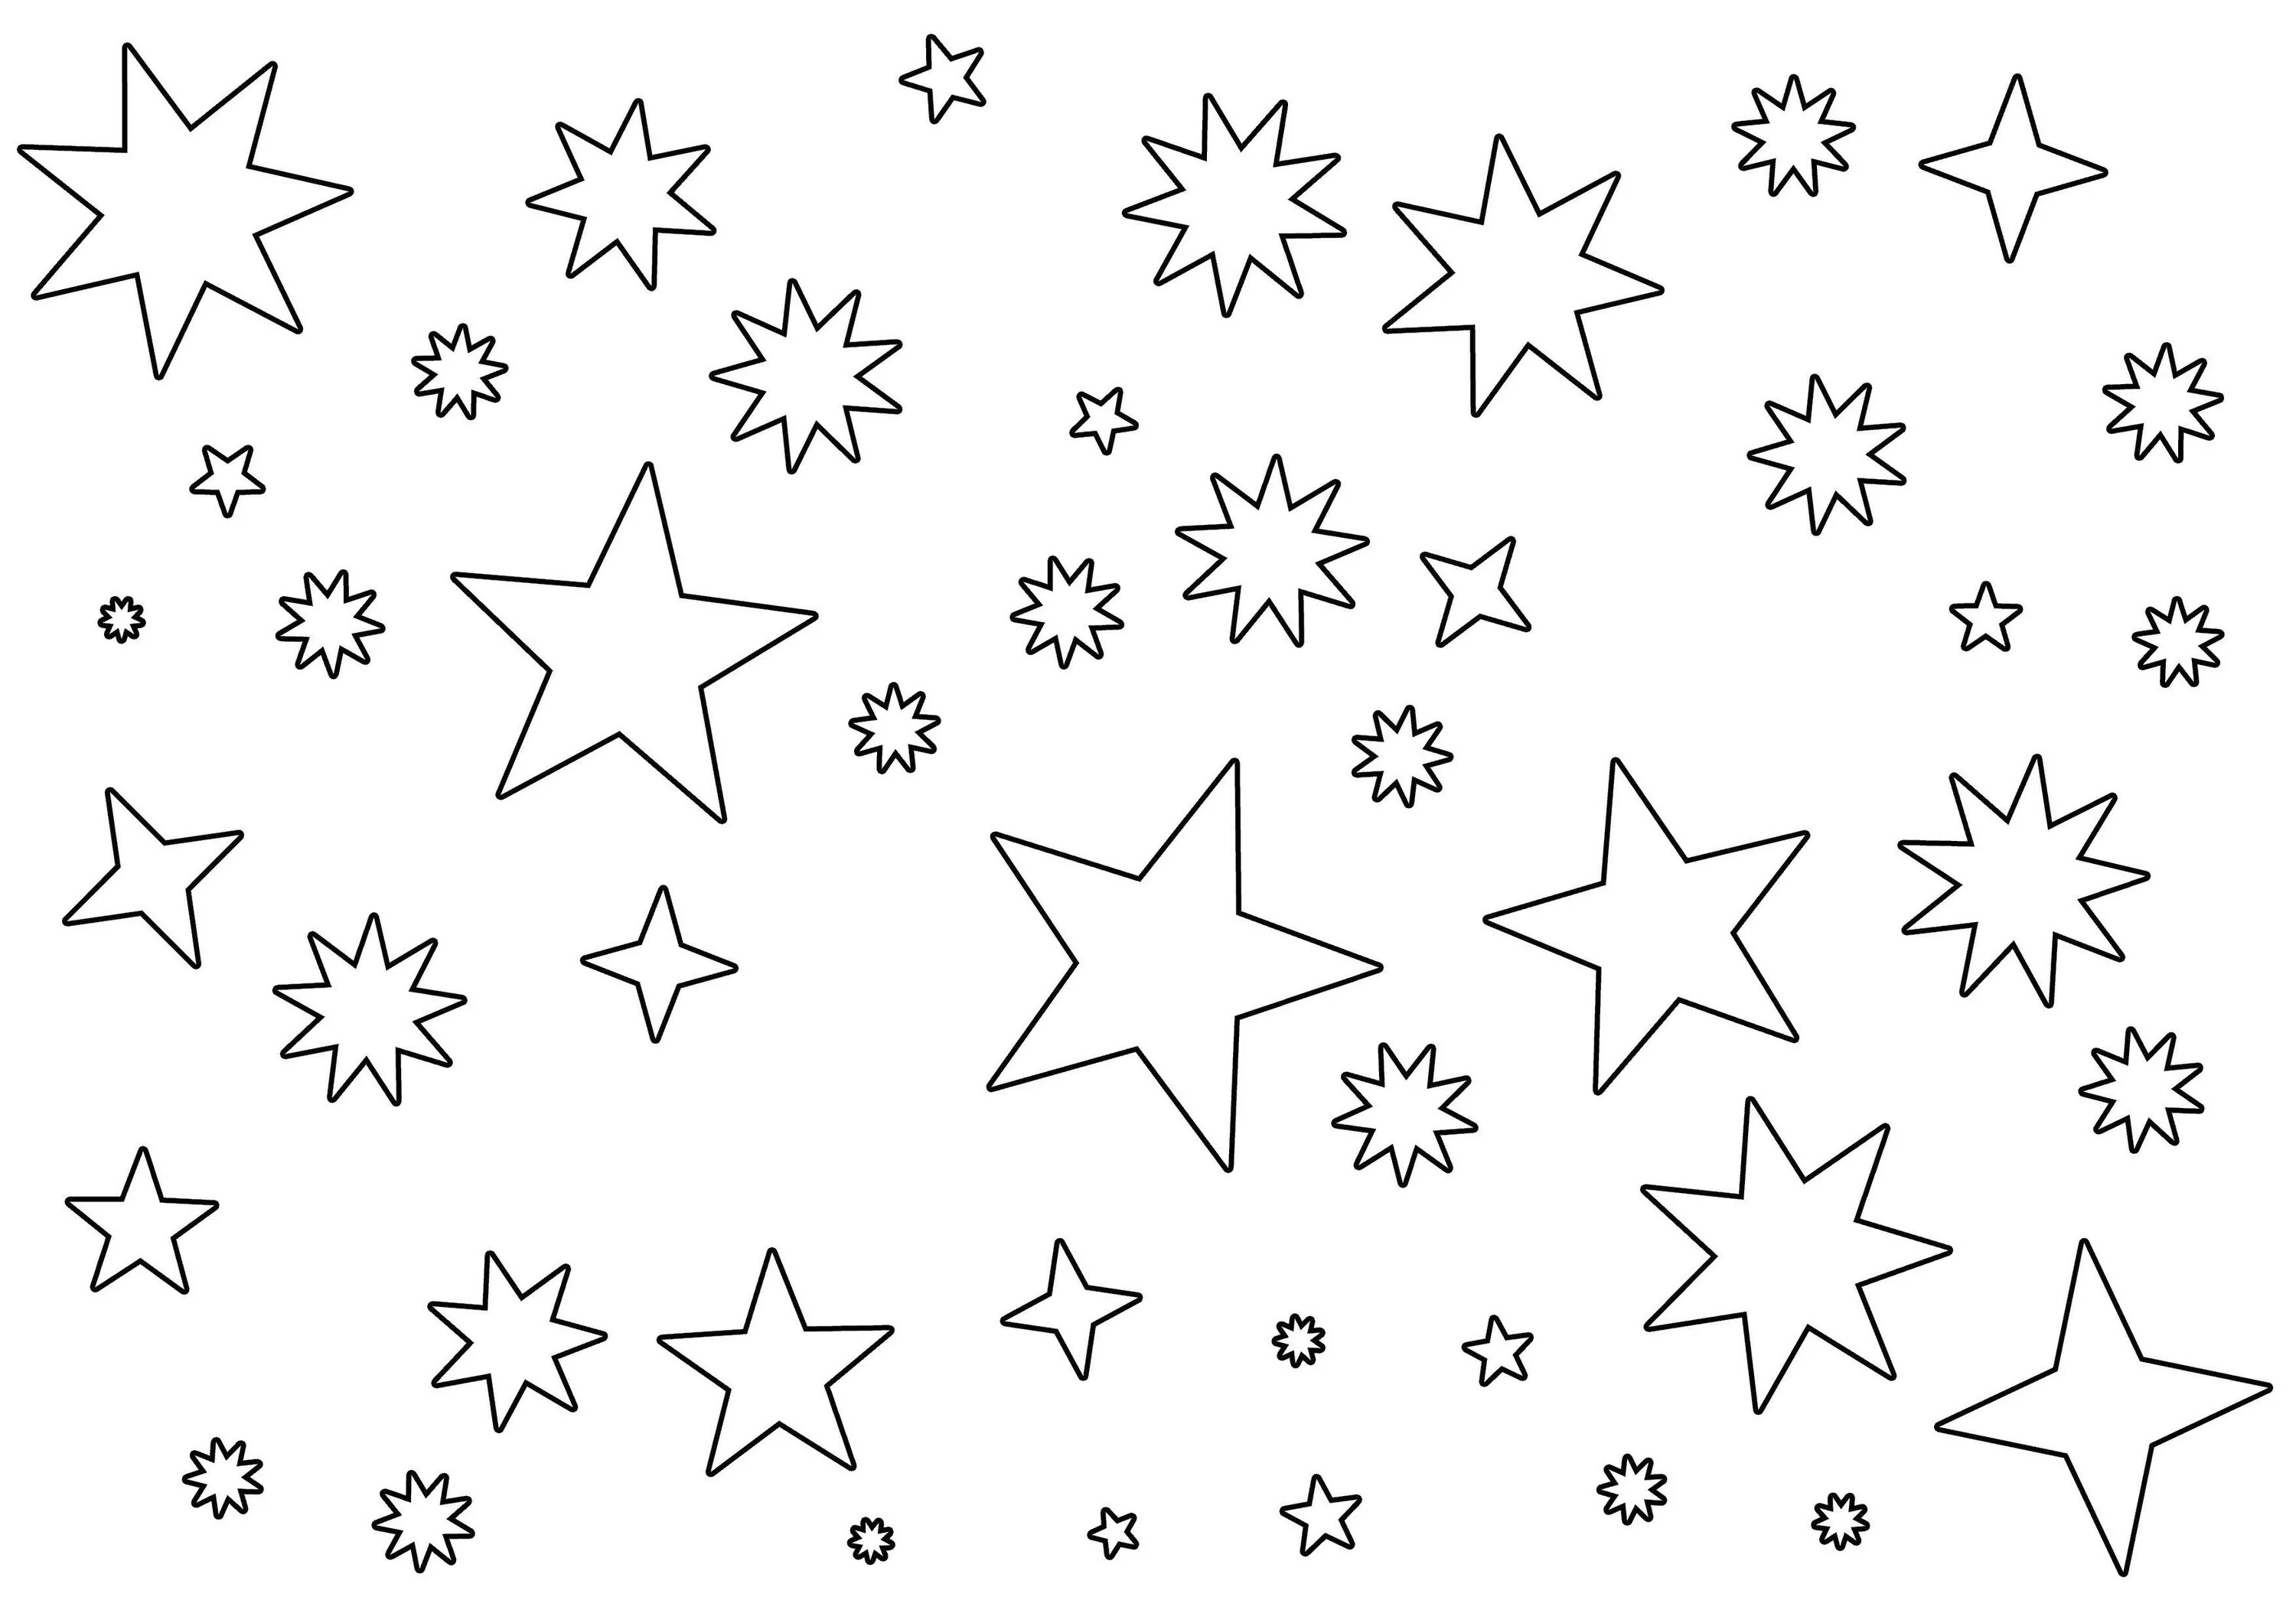 Stars in the sky #26